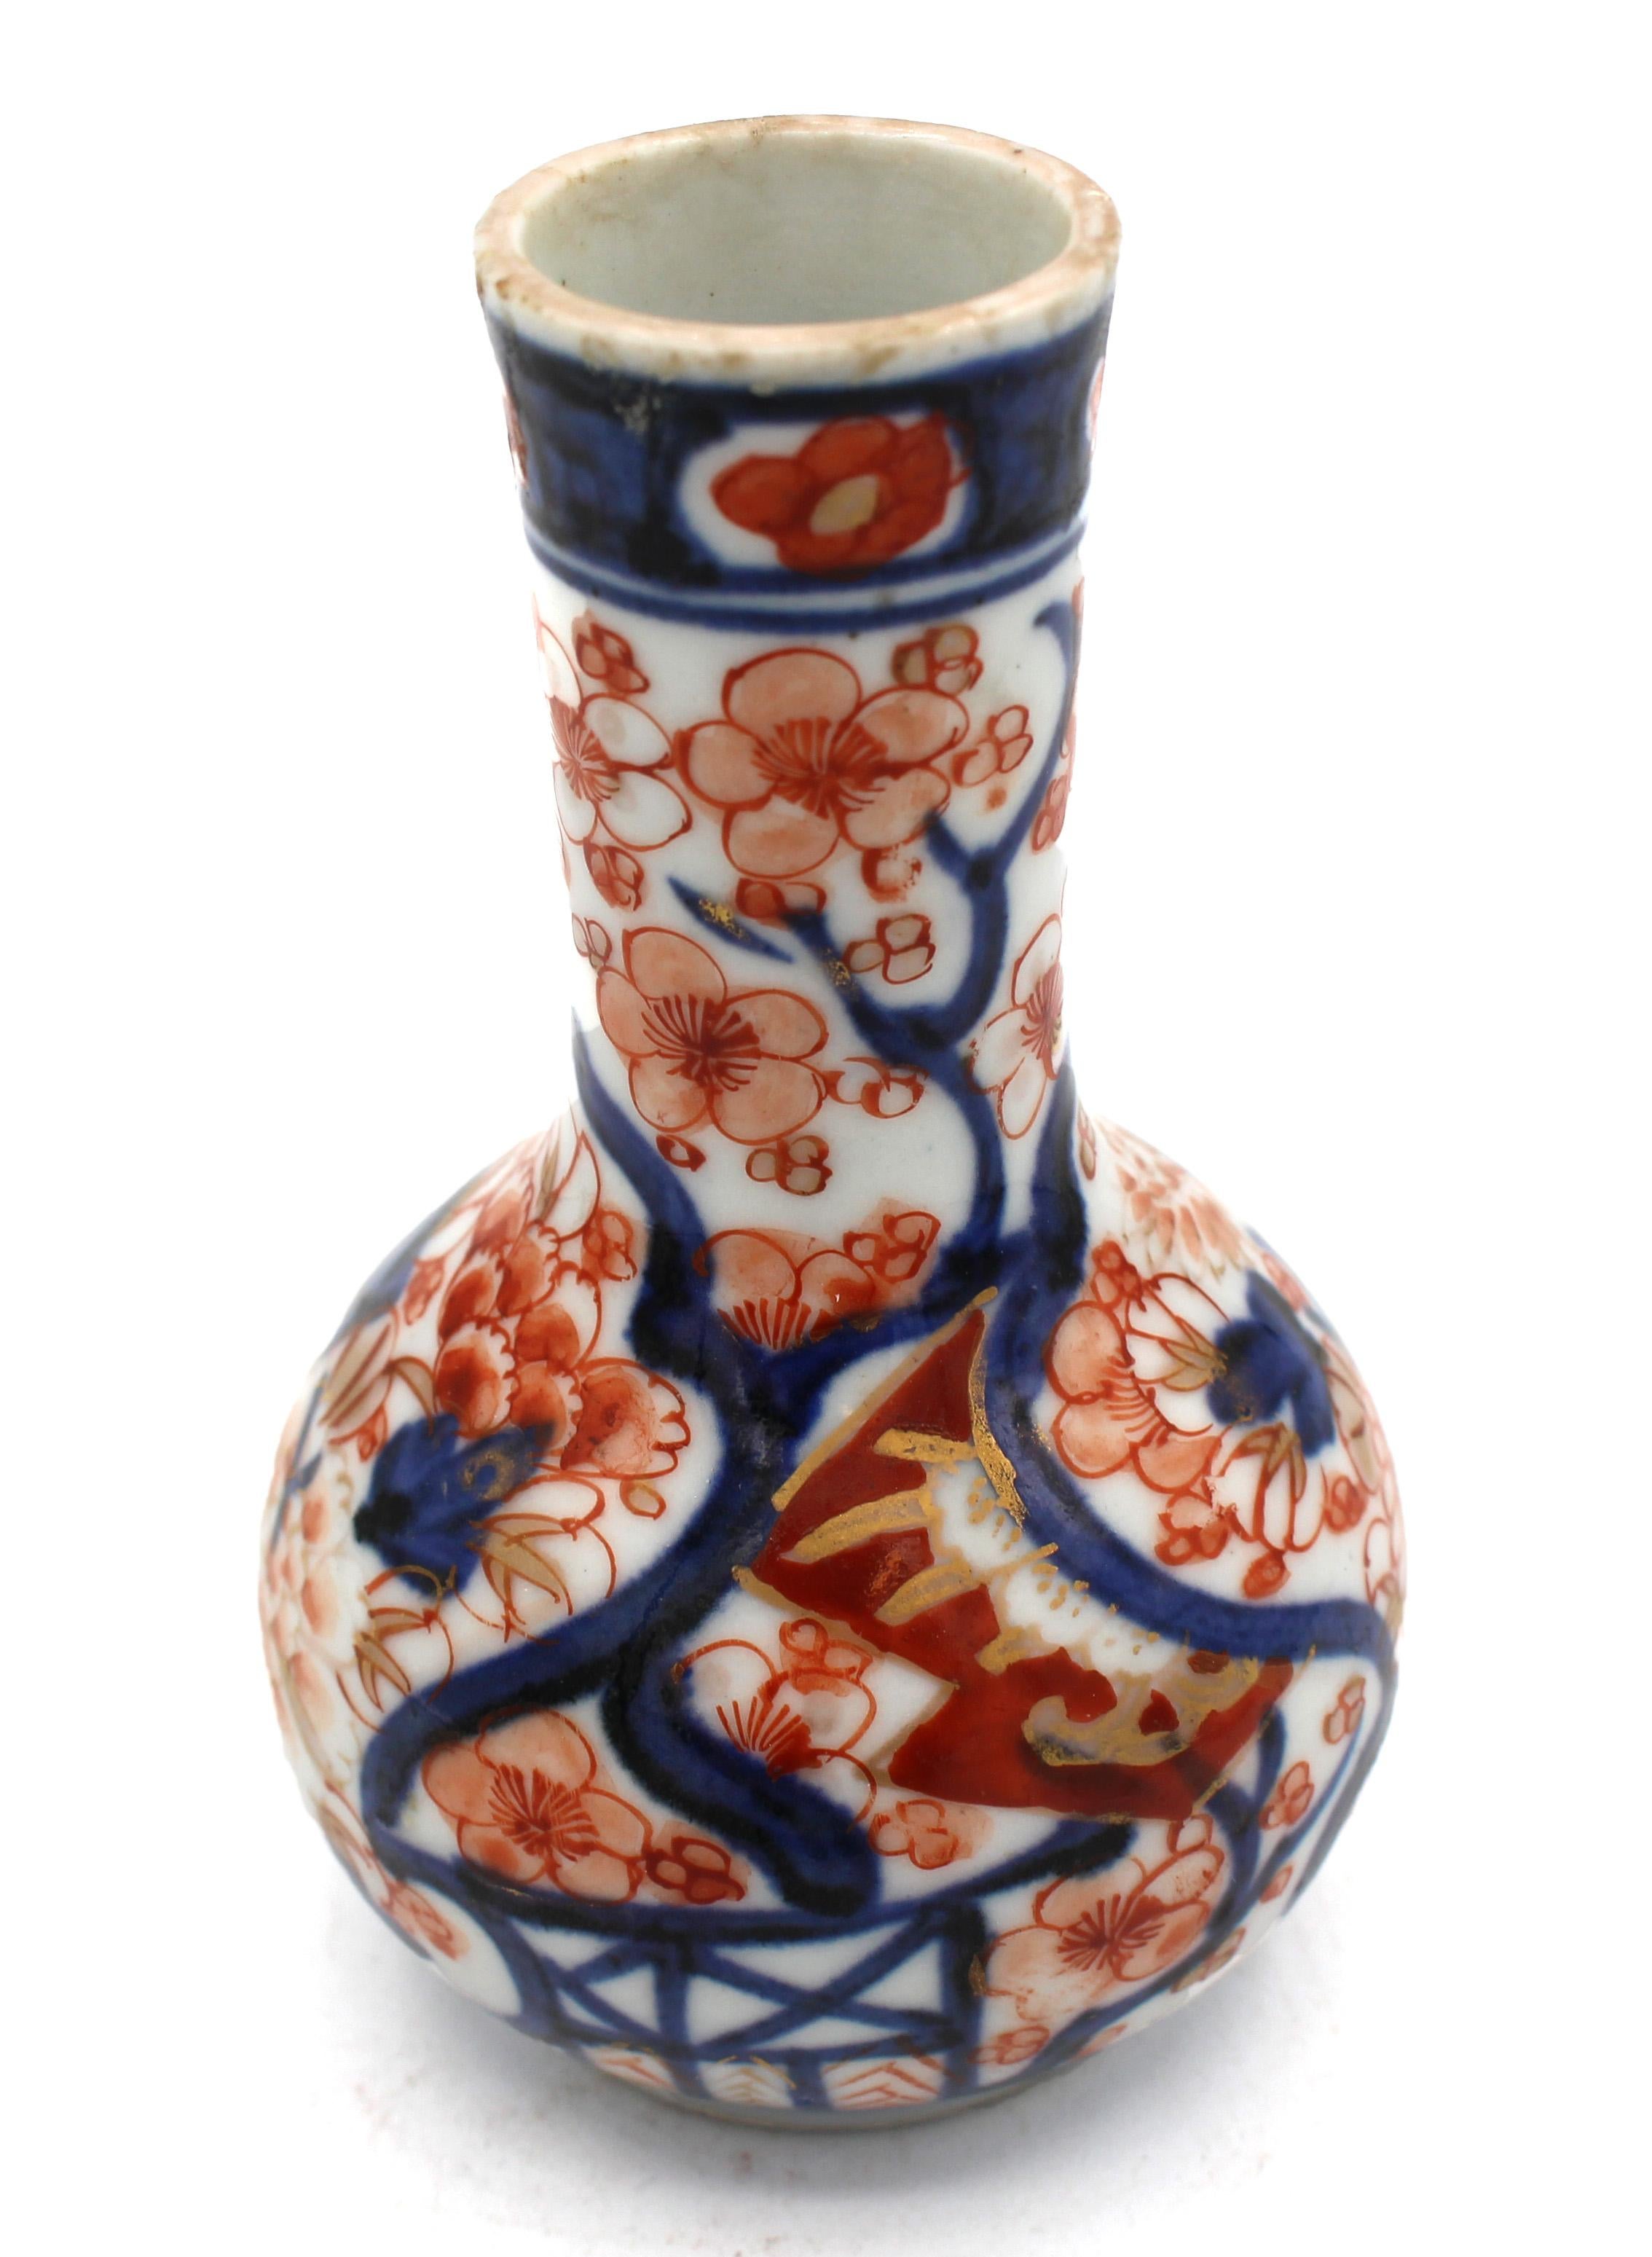 Miniatur-Imari-Vase, japanisch, um 1870. Späte Meiji-Ära. Längerer, leicht ausgestellter Hals. Fein bemalt und vergoldet mit floralen Reserven.
4 1/8